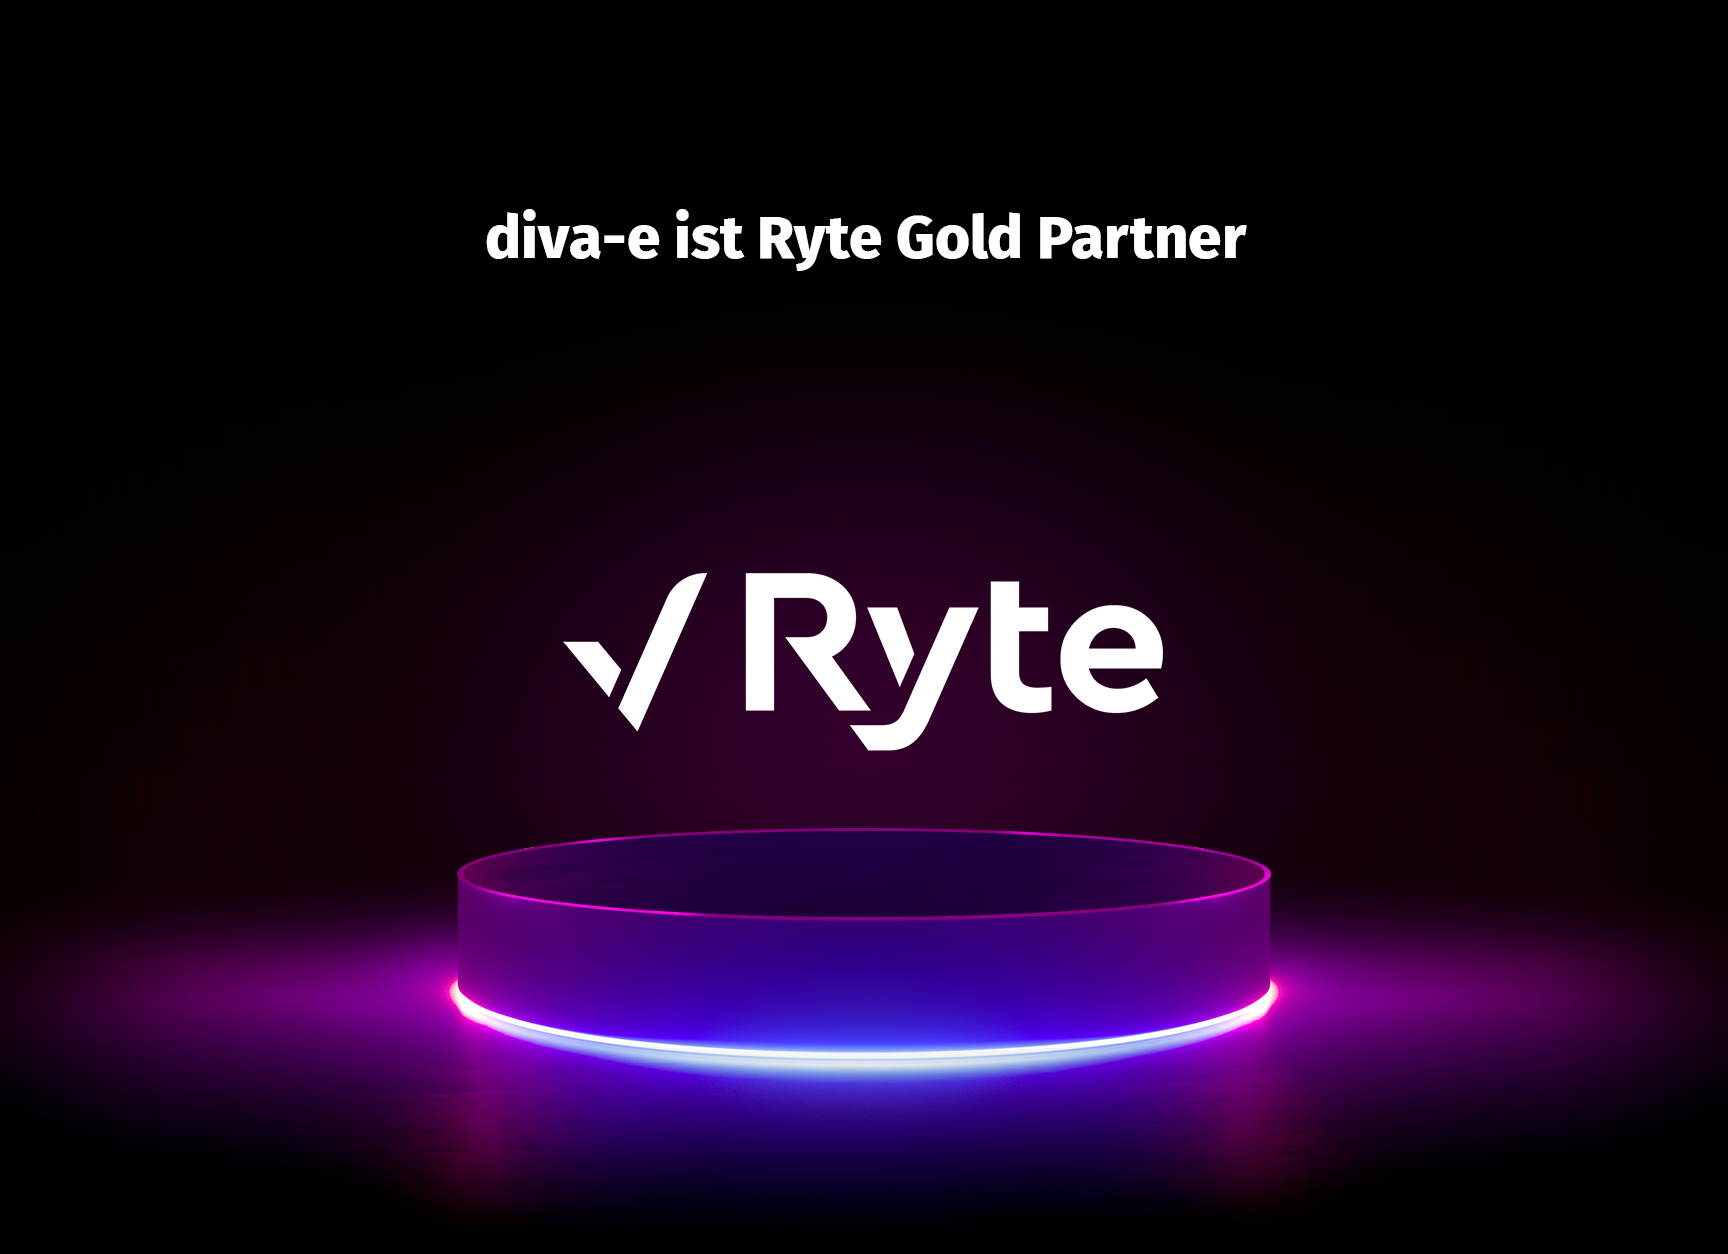 diva-e ist Ryte Gold Partner